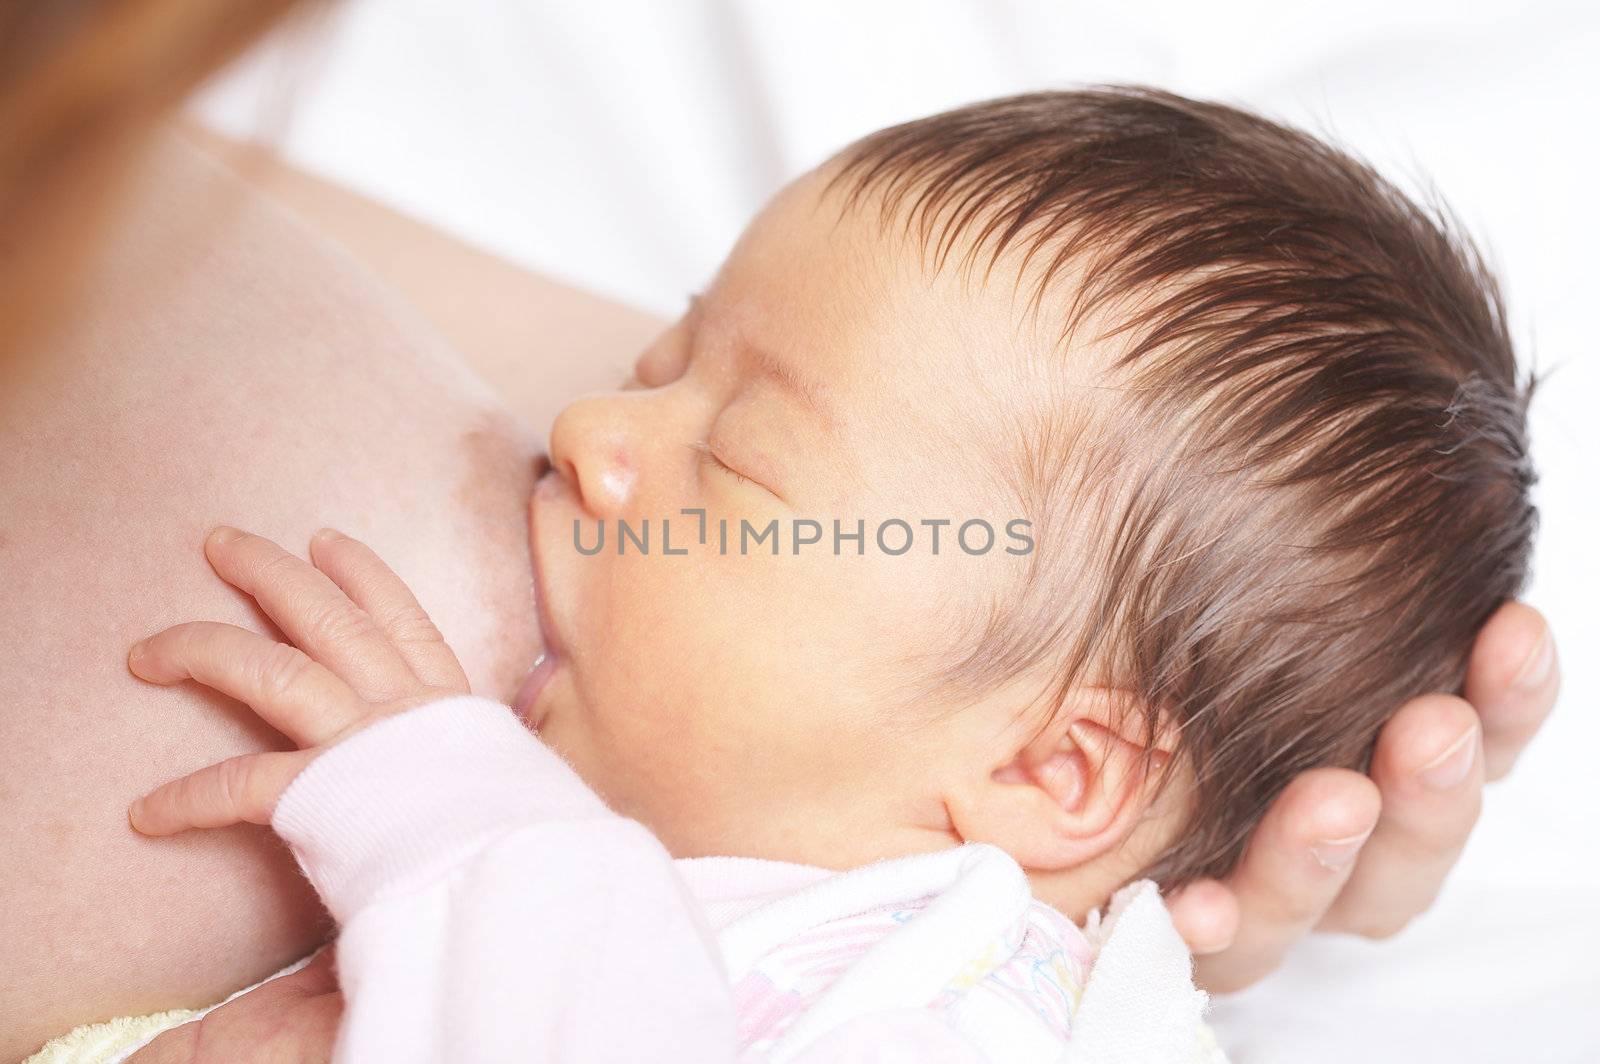 infancy (breast feeding) by agg